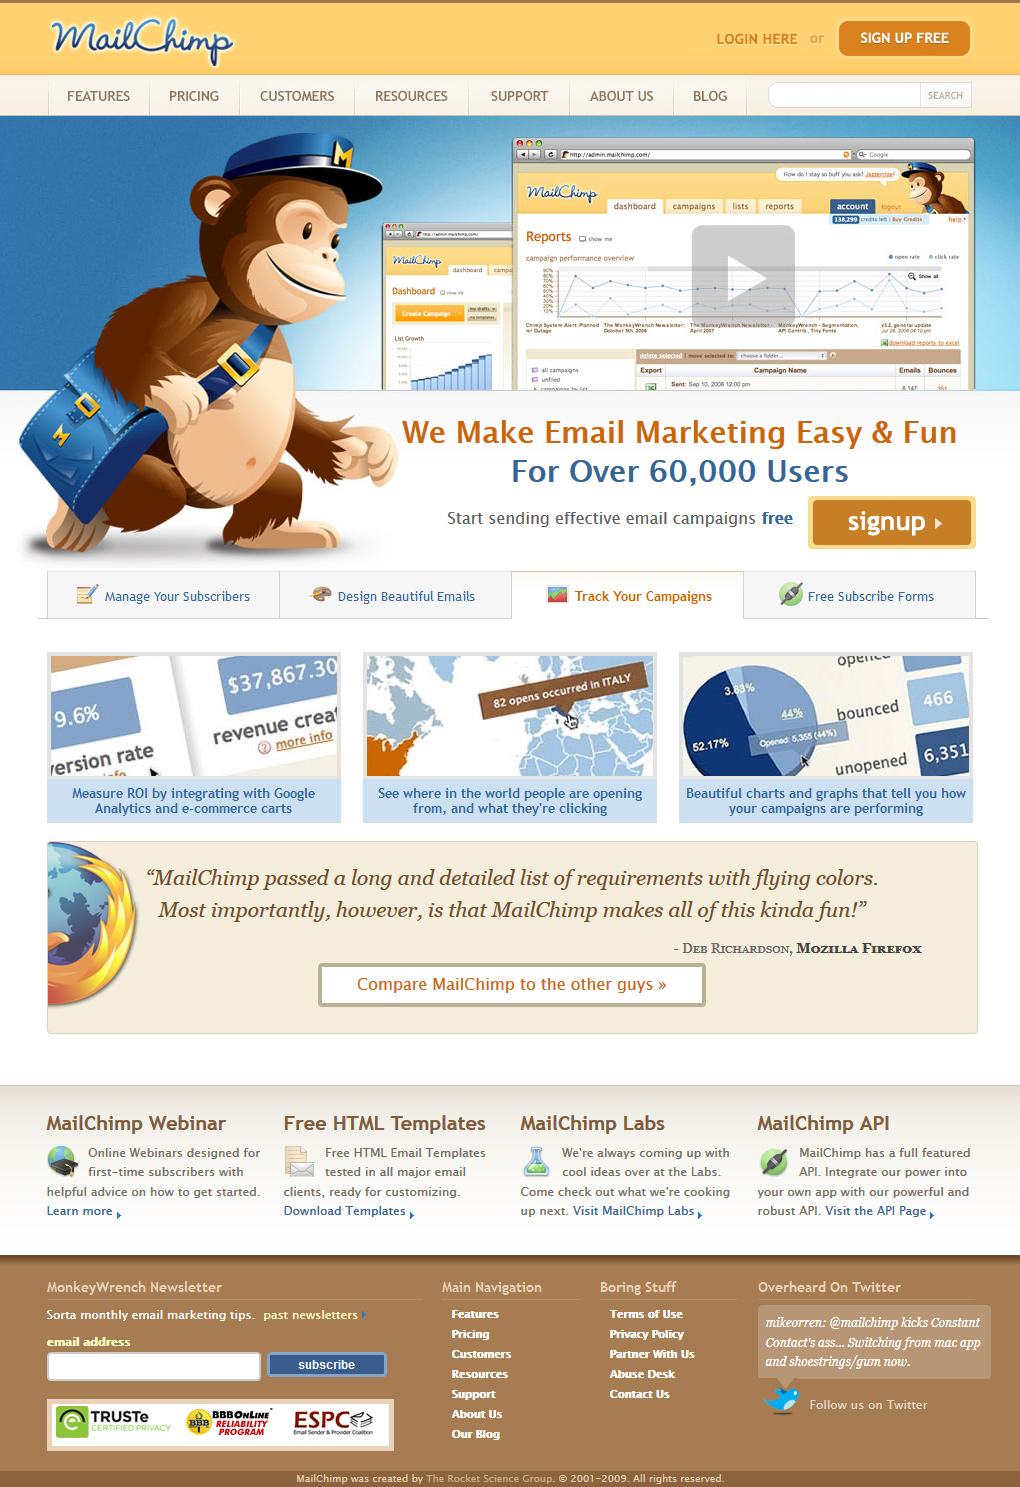 Mailchimp website in 2009